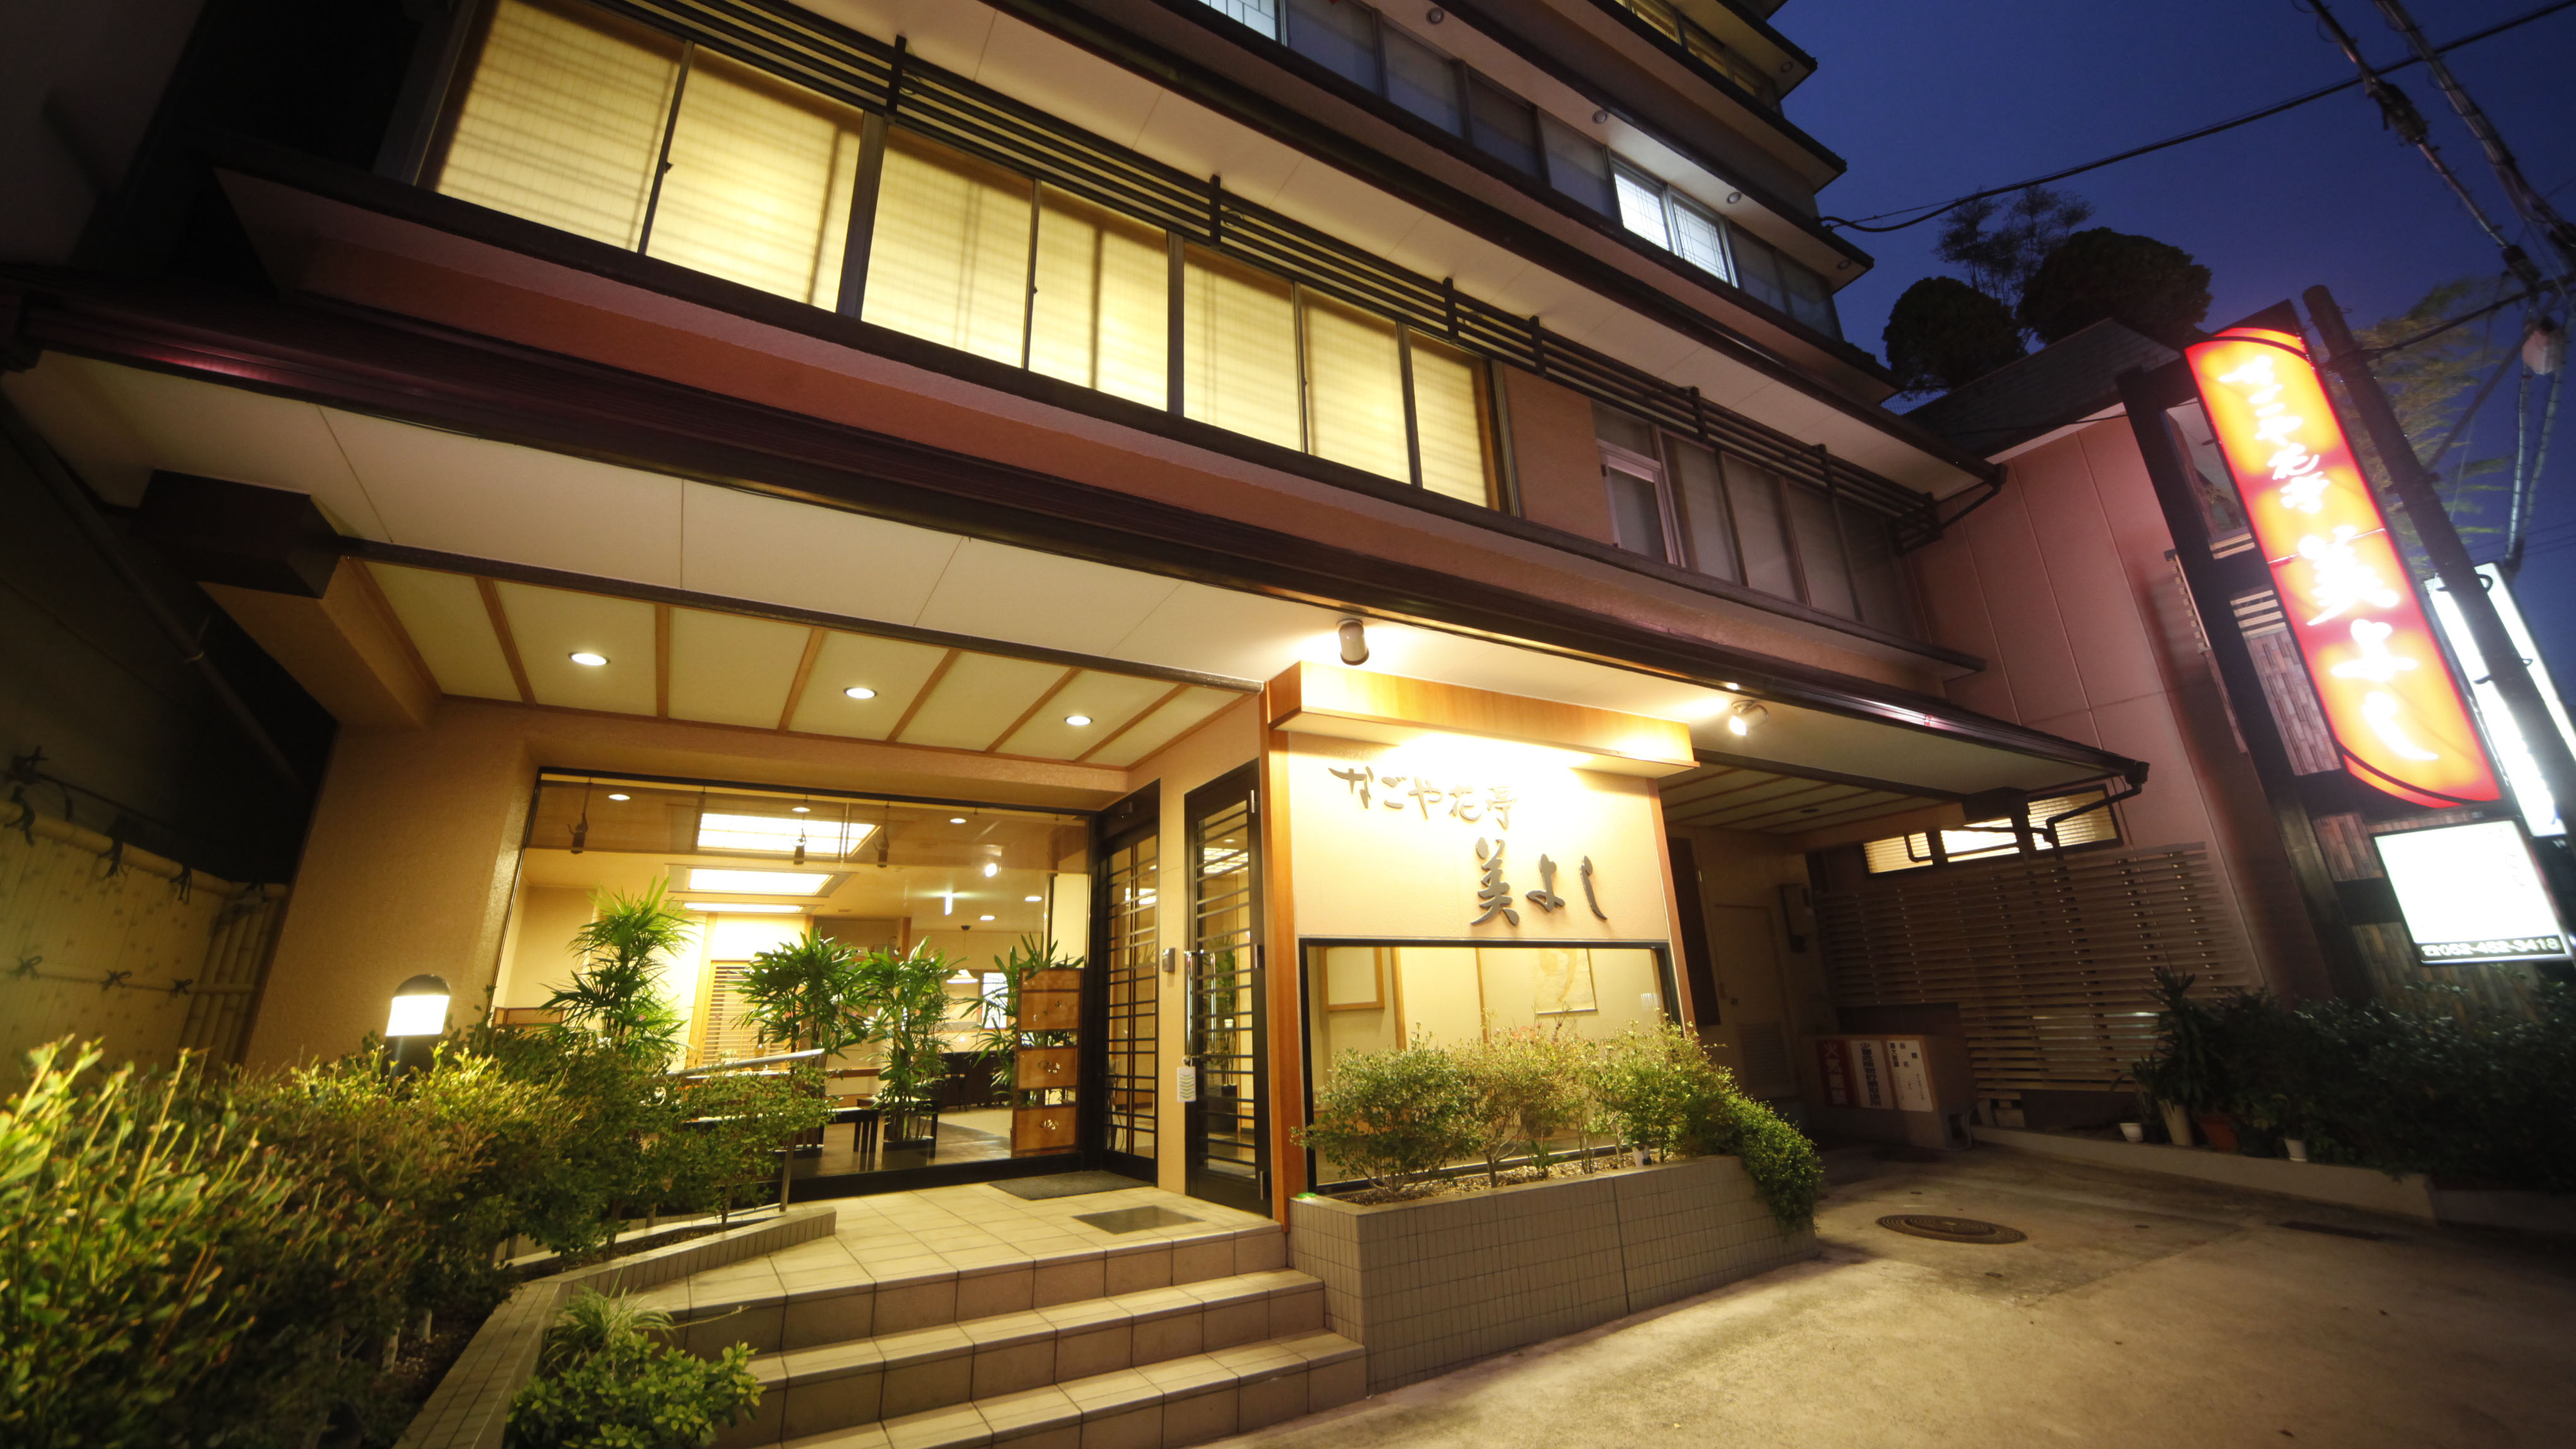 名古屋周辺で還暦・長寿のお祝いにおすすめホテルを教えてください